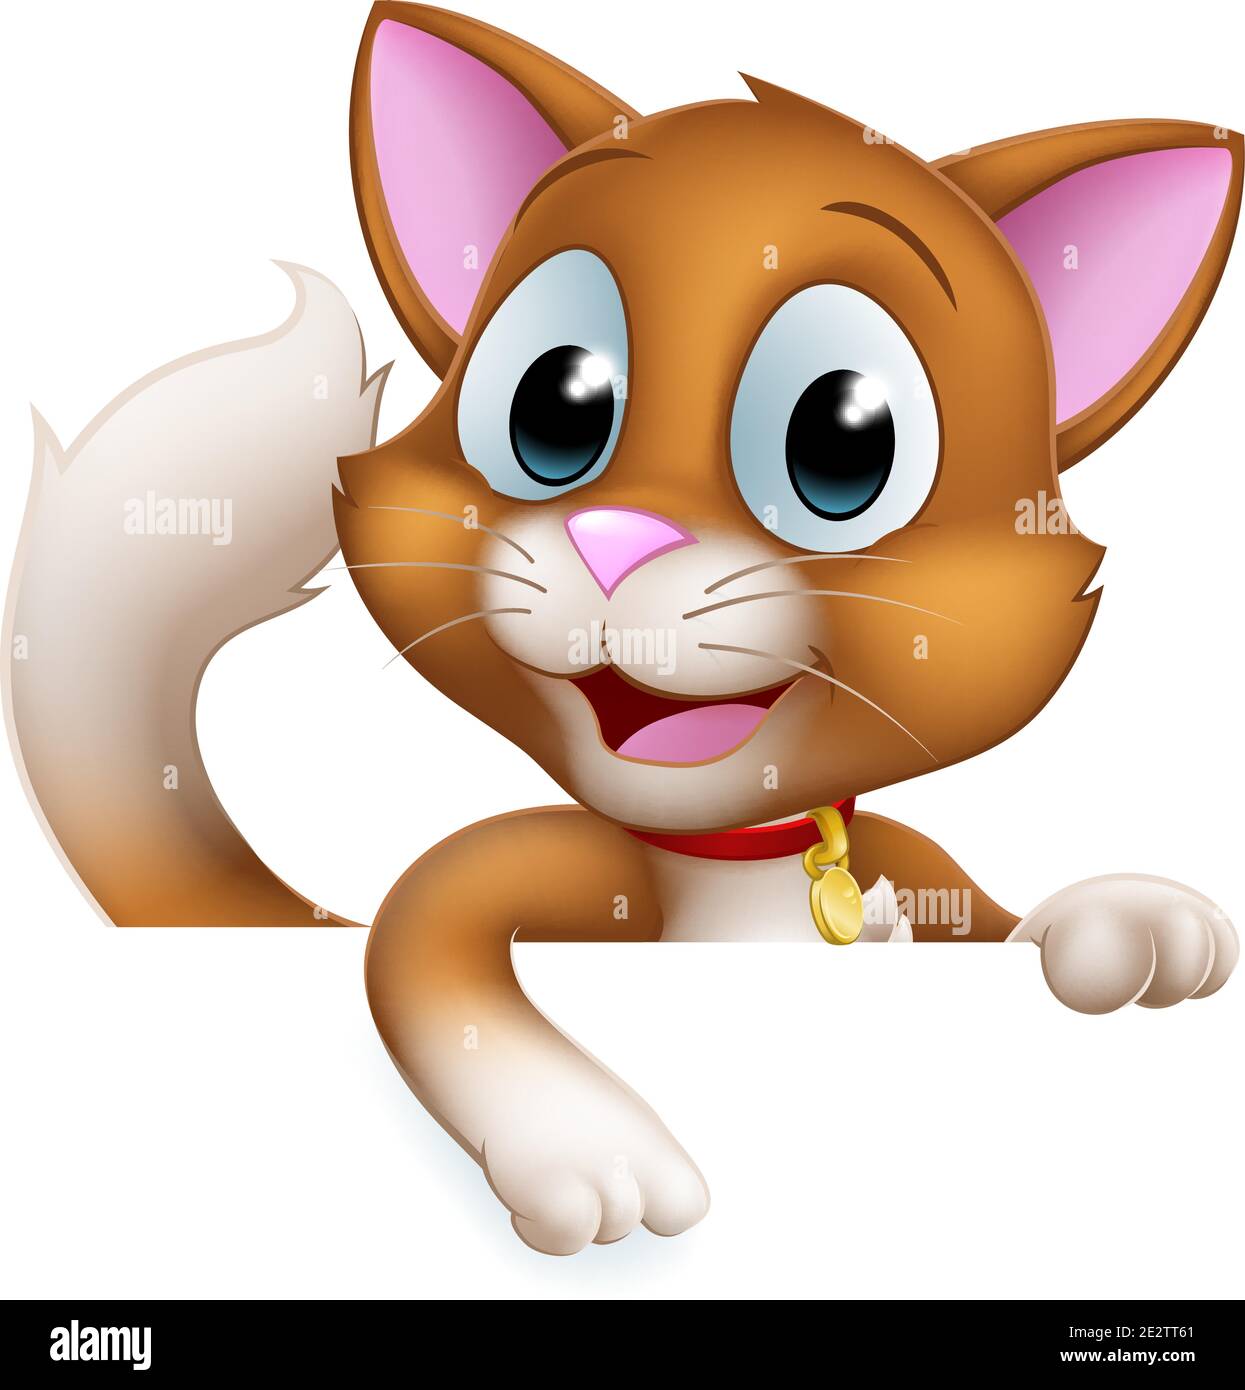 Cat Cartoon Pet Kitten Cute Animal Character Sign Stock Vector